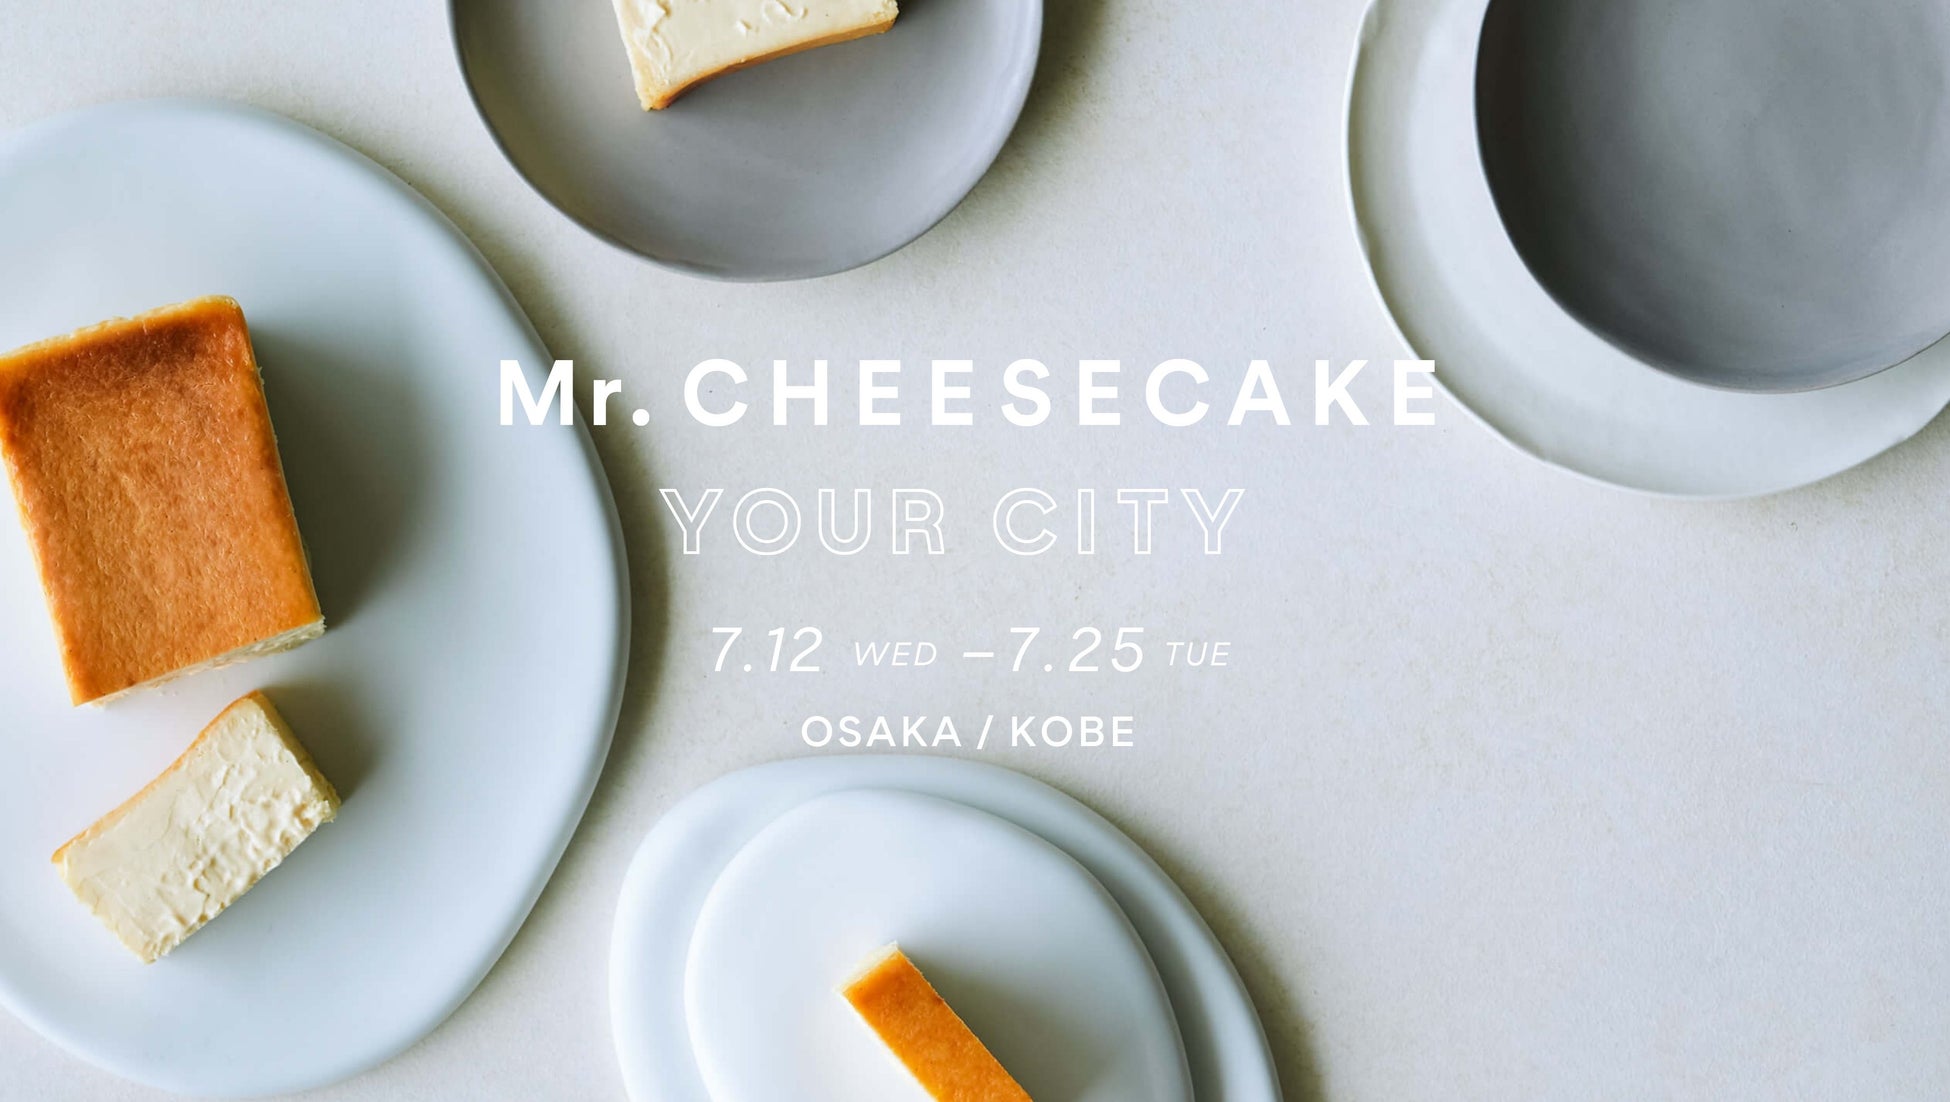 「Mr. CHEESECAKE YOUR CITY」人生最高のチーズケーキのポップアップストアが大阪・兵庫に登場！夏限定フレーバーやティラミス、人気フレーバーのアソートセットを販売